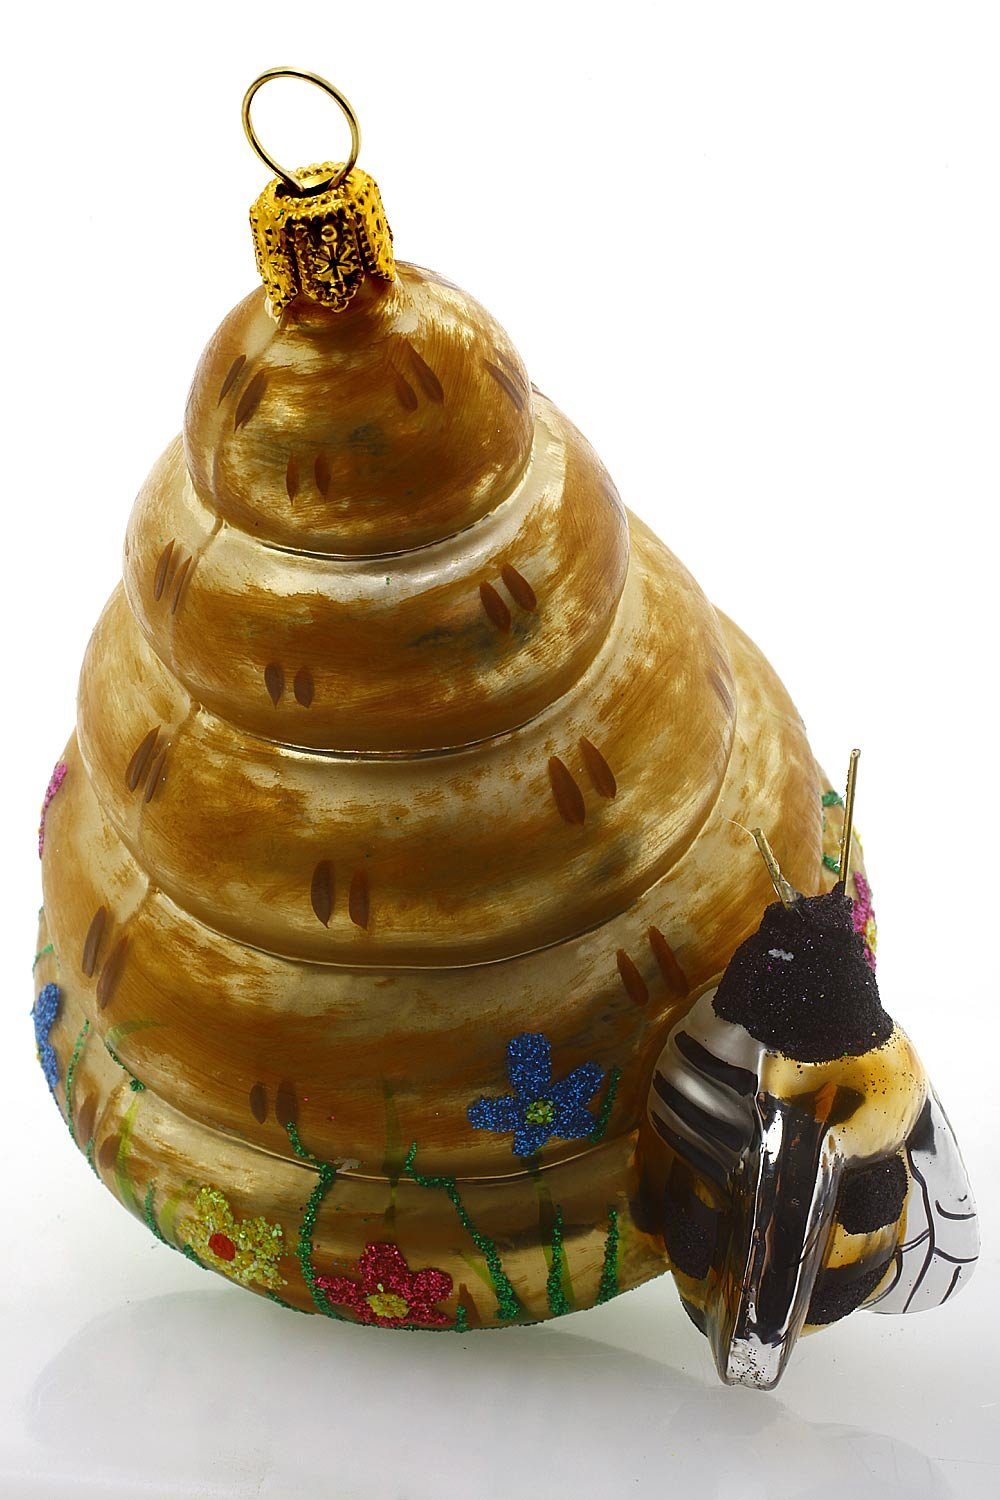 mundgeblasen - Dekohänger Weihnachtskontor Hamburger Bienenkorb, Christbaumschmuck - handdekoriert